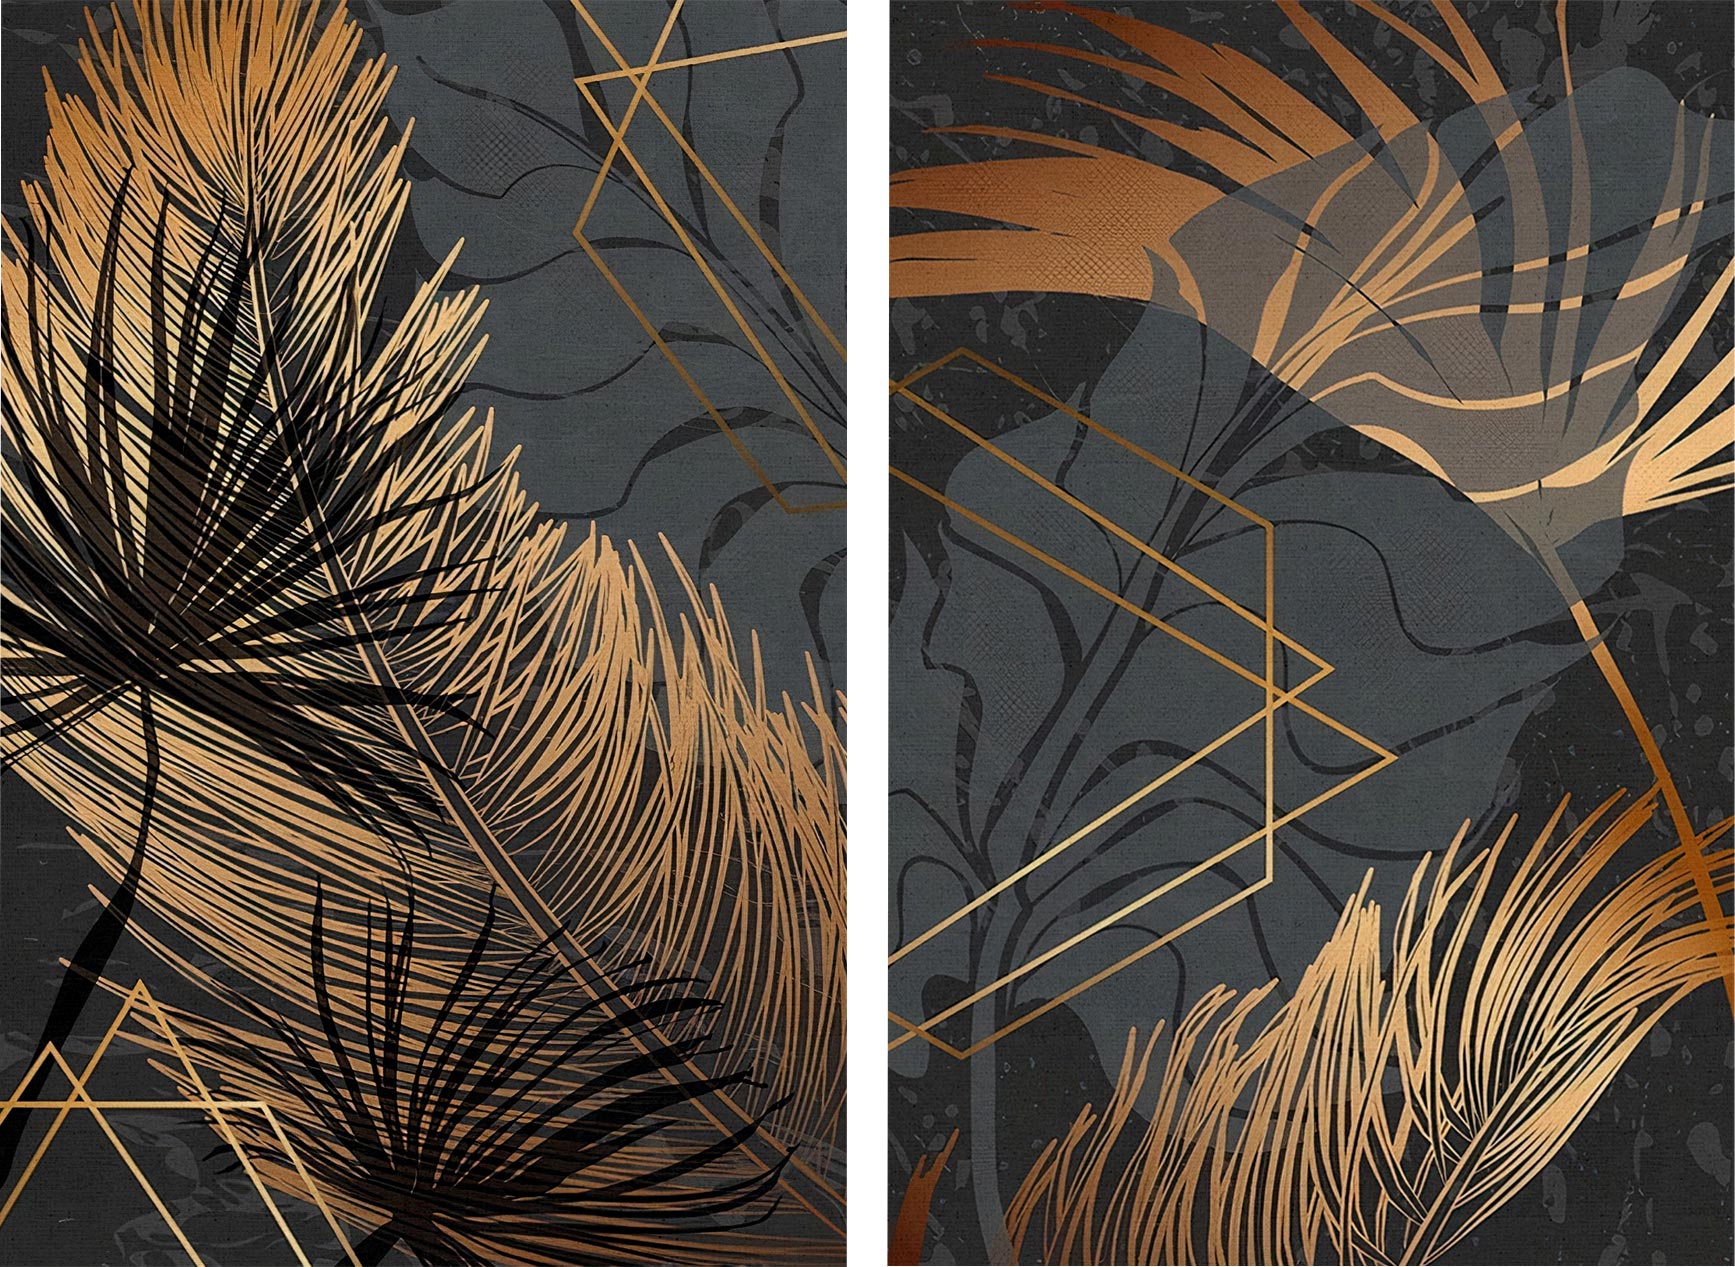 Kit 2 quadros retangulares - Penas e folhas douradas